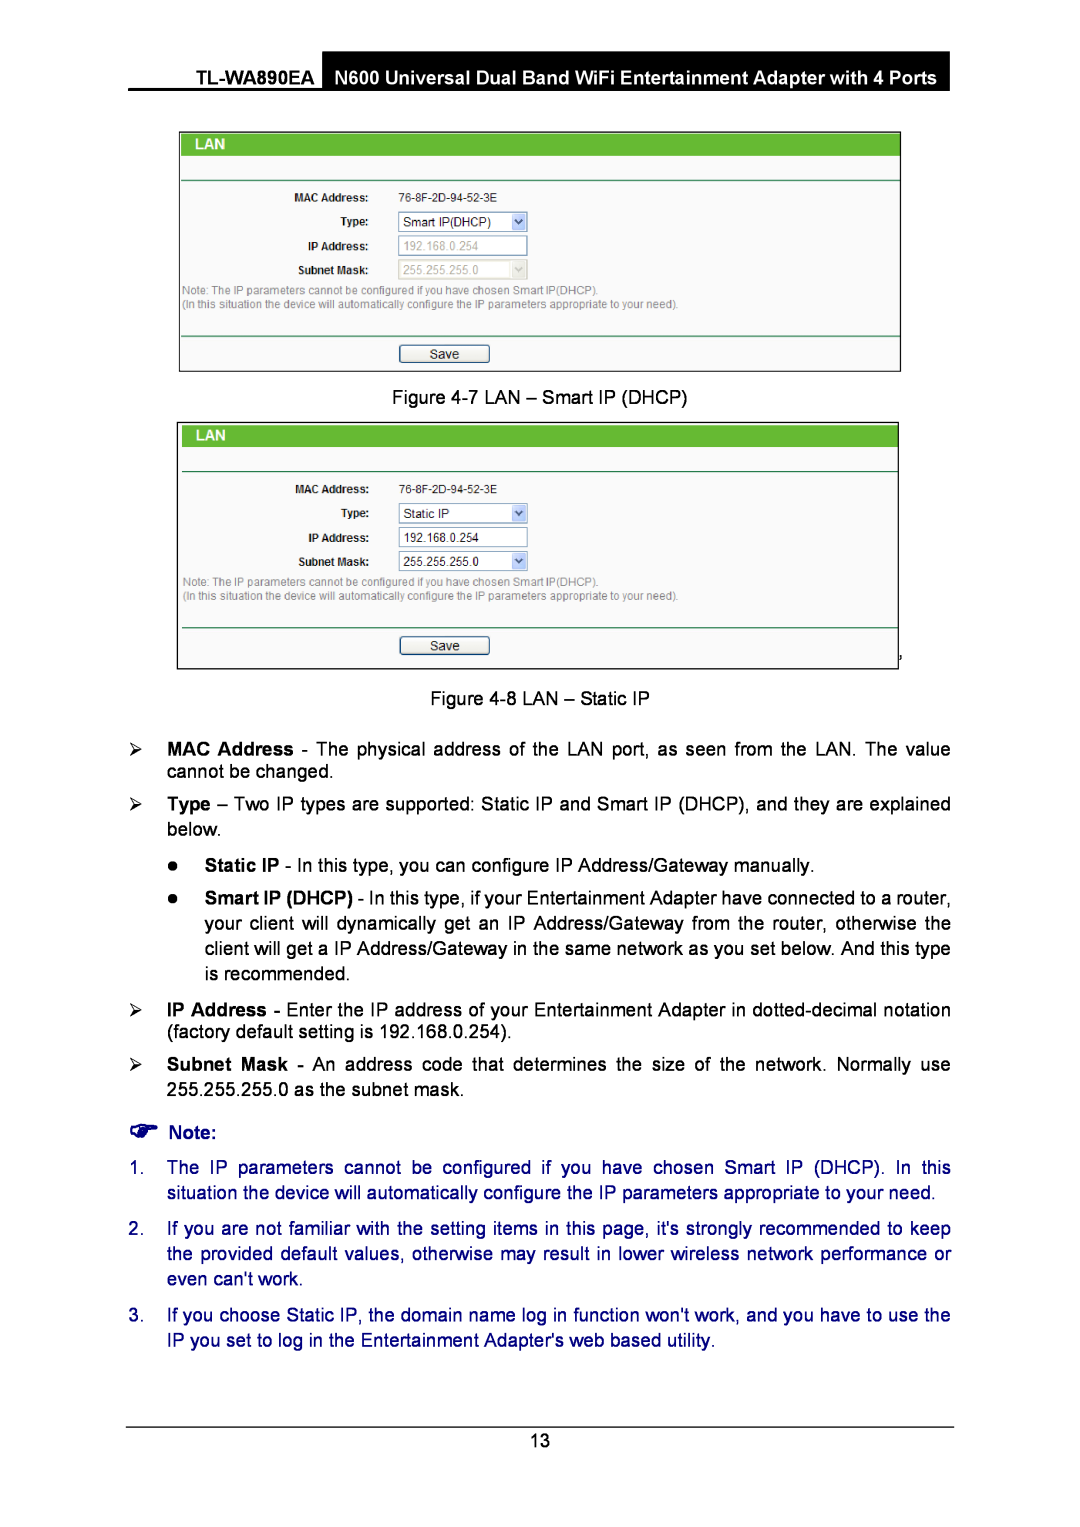 TP-Link WA-890EA manual 7 LAN - Smart IP DHCP ’ -8 LAN - Static IP,  Note 